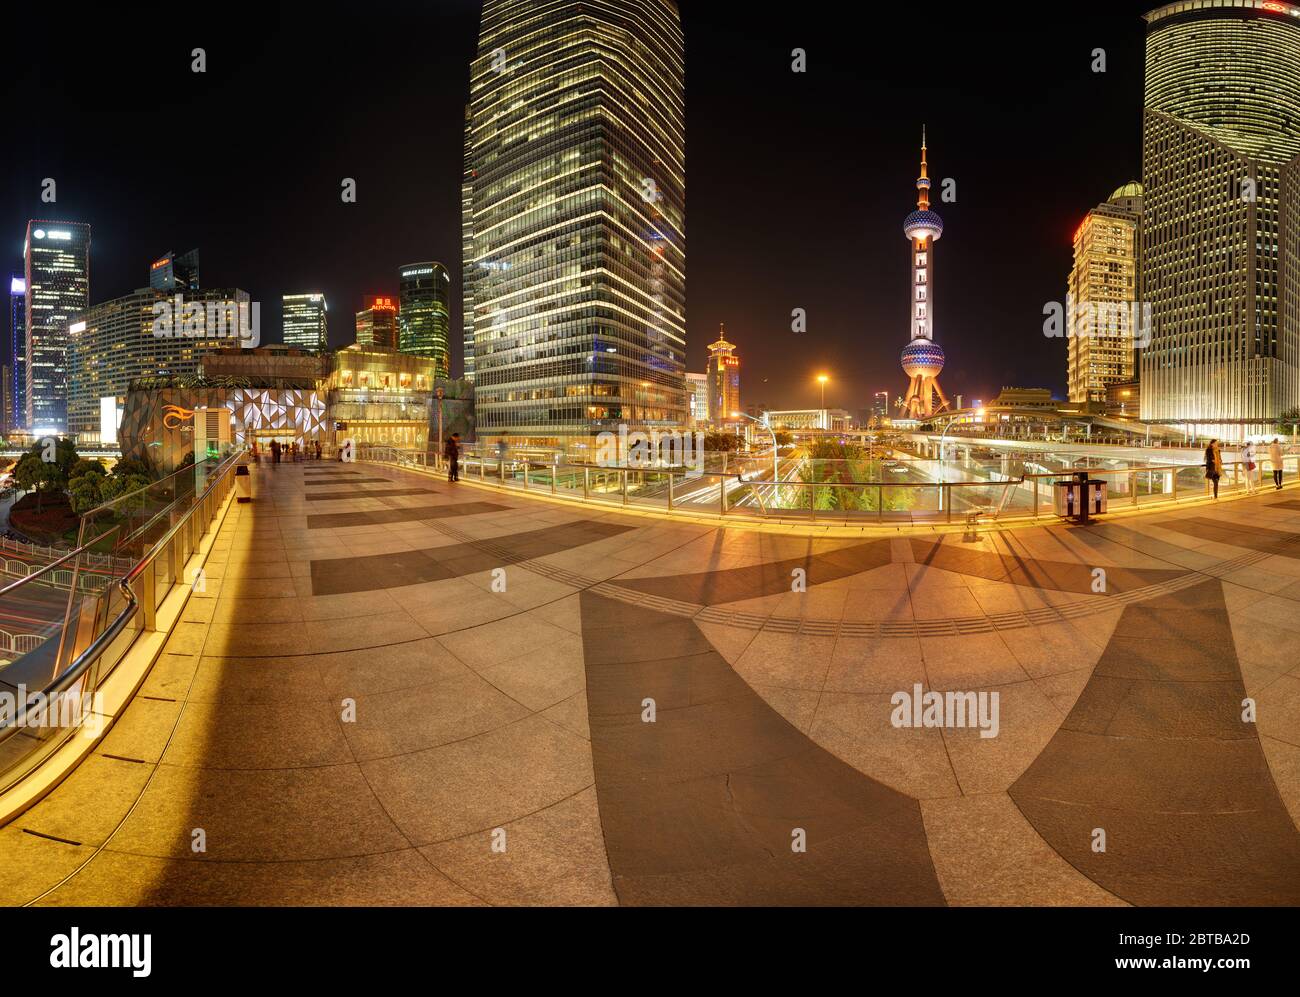 SHANGHAI, CHINE - 21 avril 2015 : 360 degrés skyline de centre financier de Pudong de nuit. Passerelle piétonne aérienne, à Lujiazui. La partie gauche,peut être co Banque D'Images